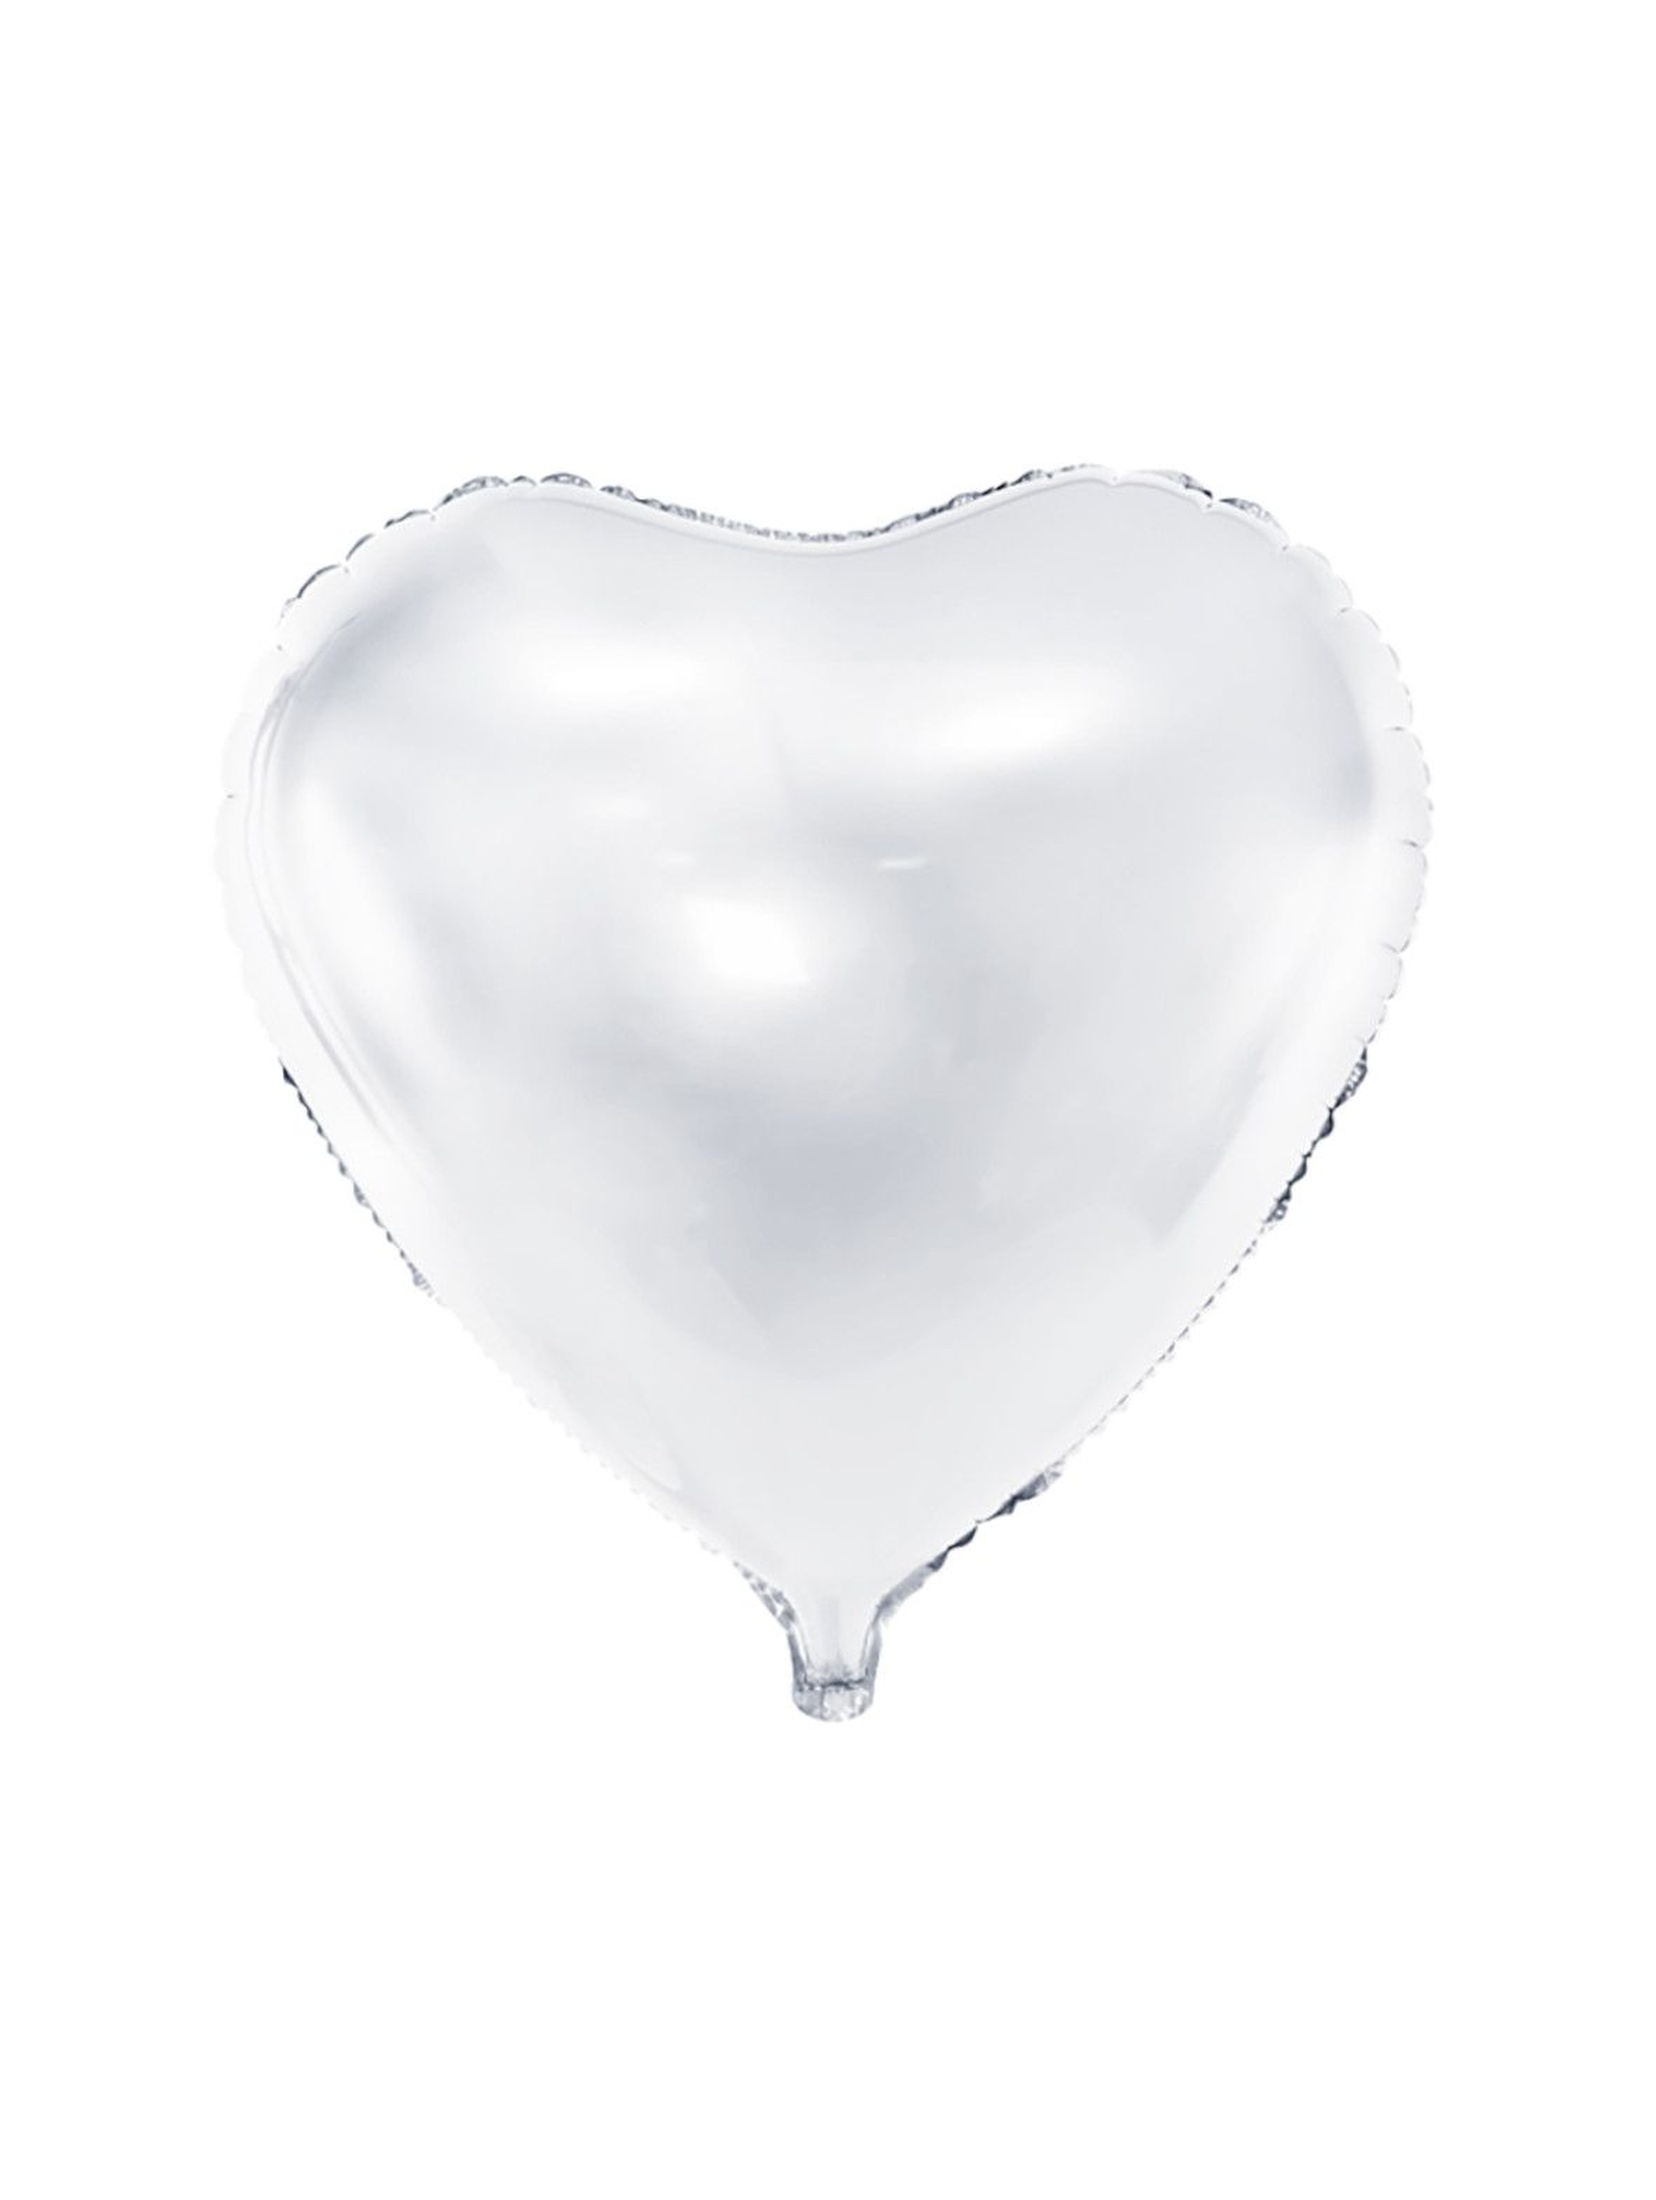 Balon foliowy Serce  61cm - biały